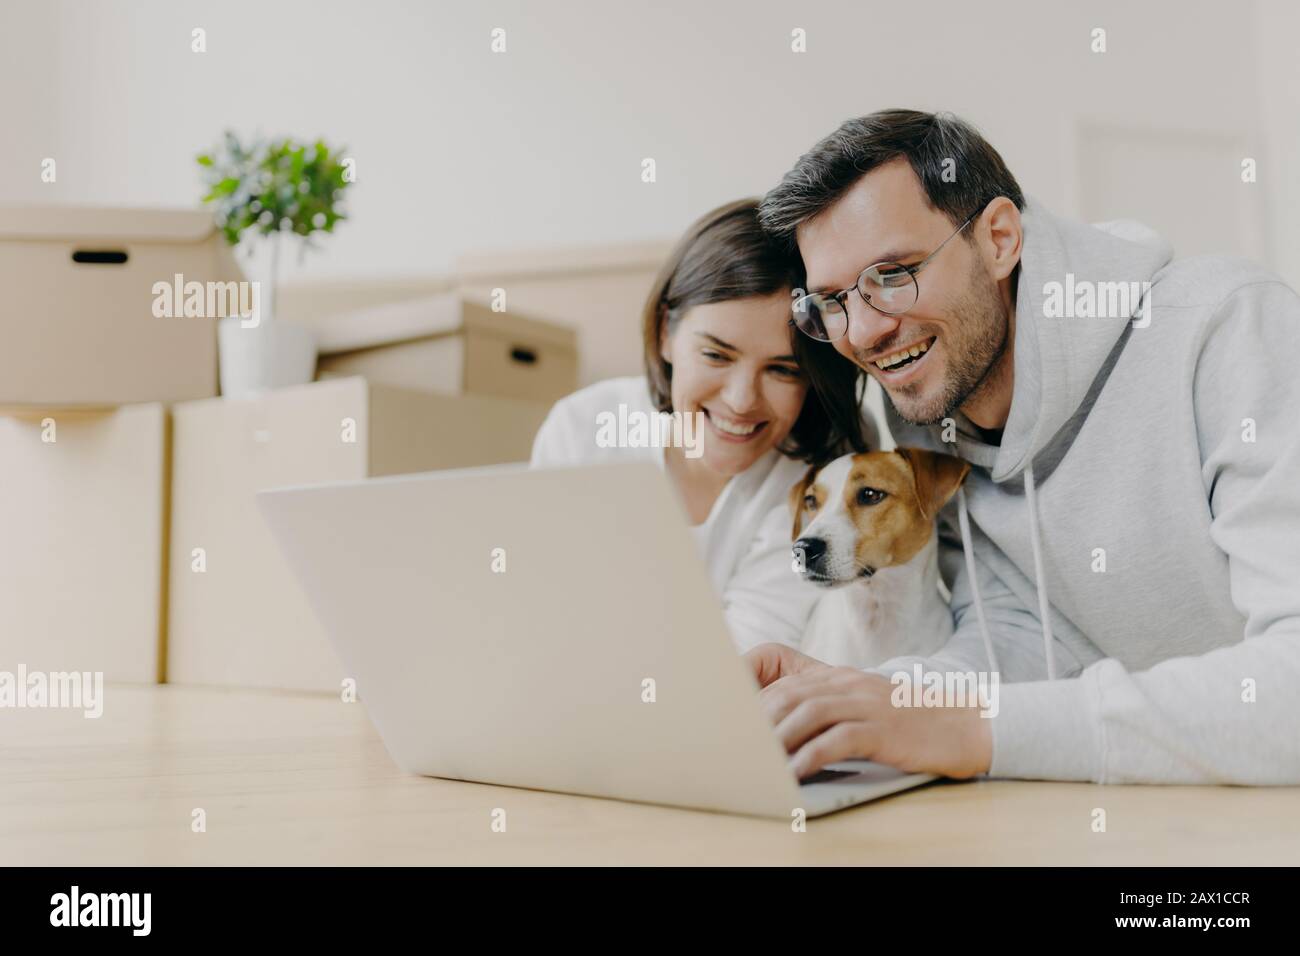 Überfreuliches Familienpaar lachen, während Sie Online-Shops auf einem modernen Laptop mit ihrem Hund ansehen, nach dem Auspacken von Kartons Pause machen, home renovatio Stockfoto